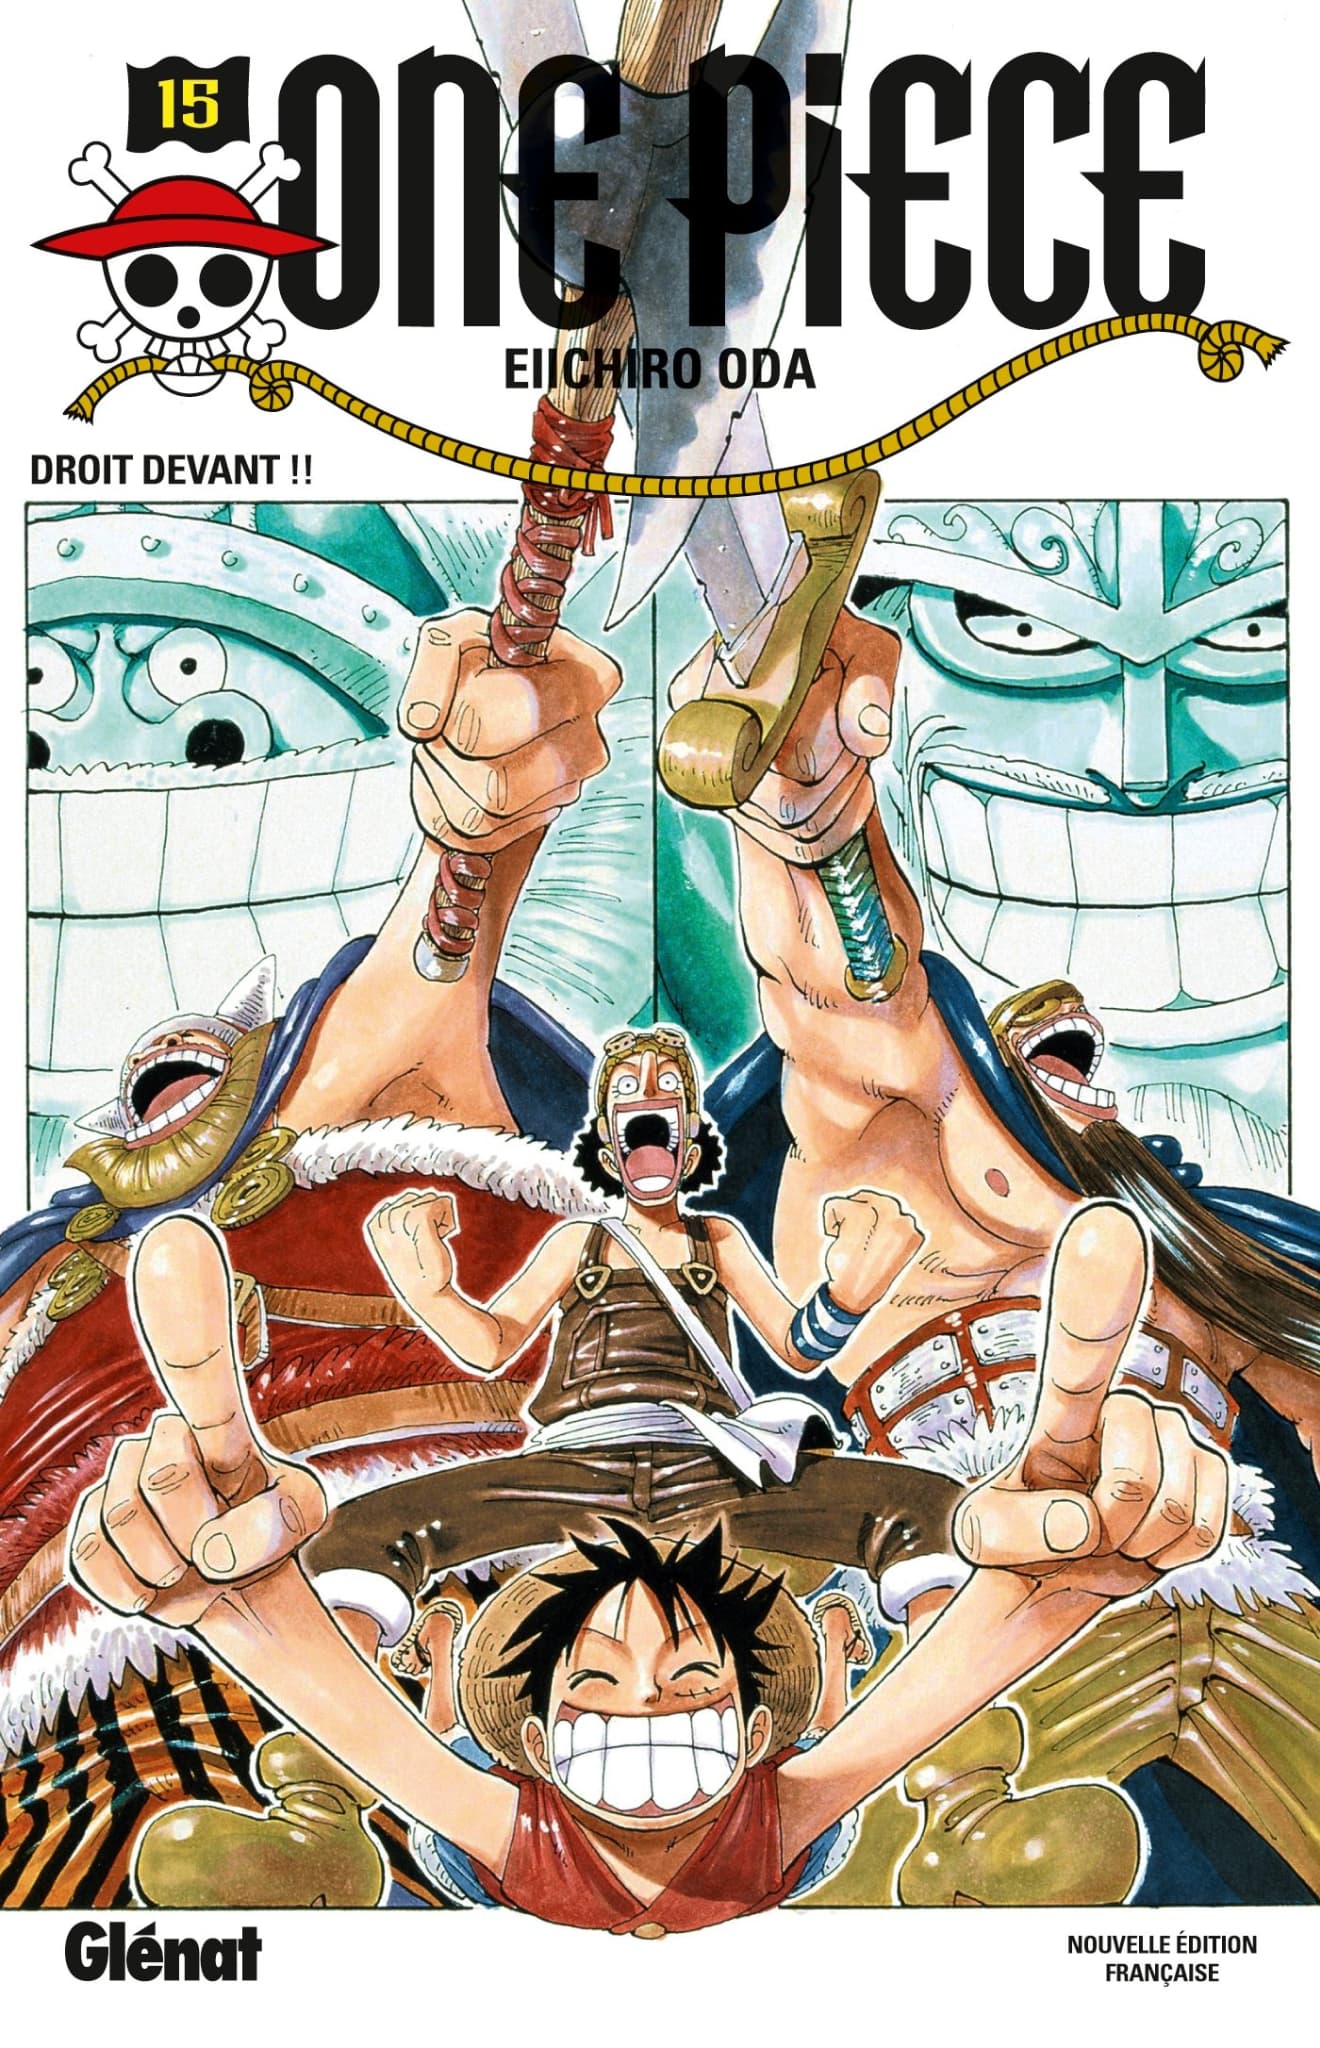 One Piece a 25 ans: on a classé du pire au meilleur les arcs du manga  d'Eiichirō Oda